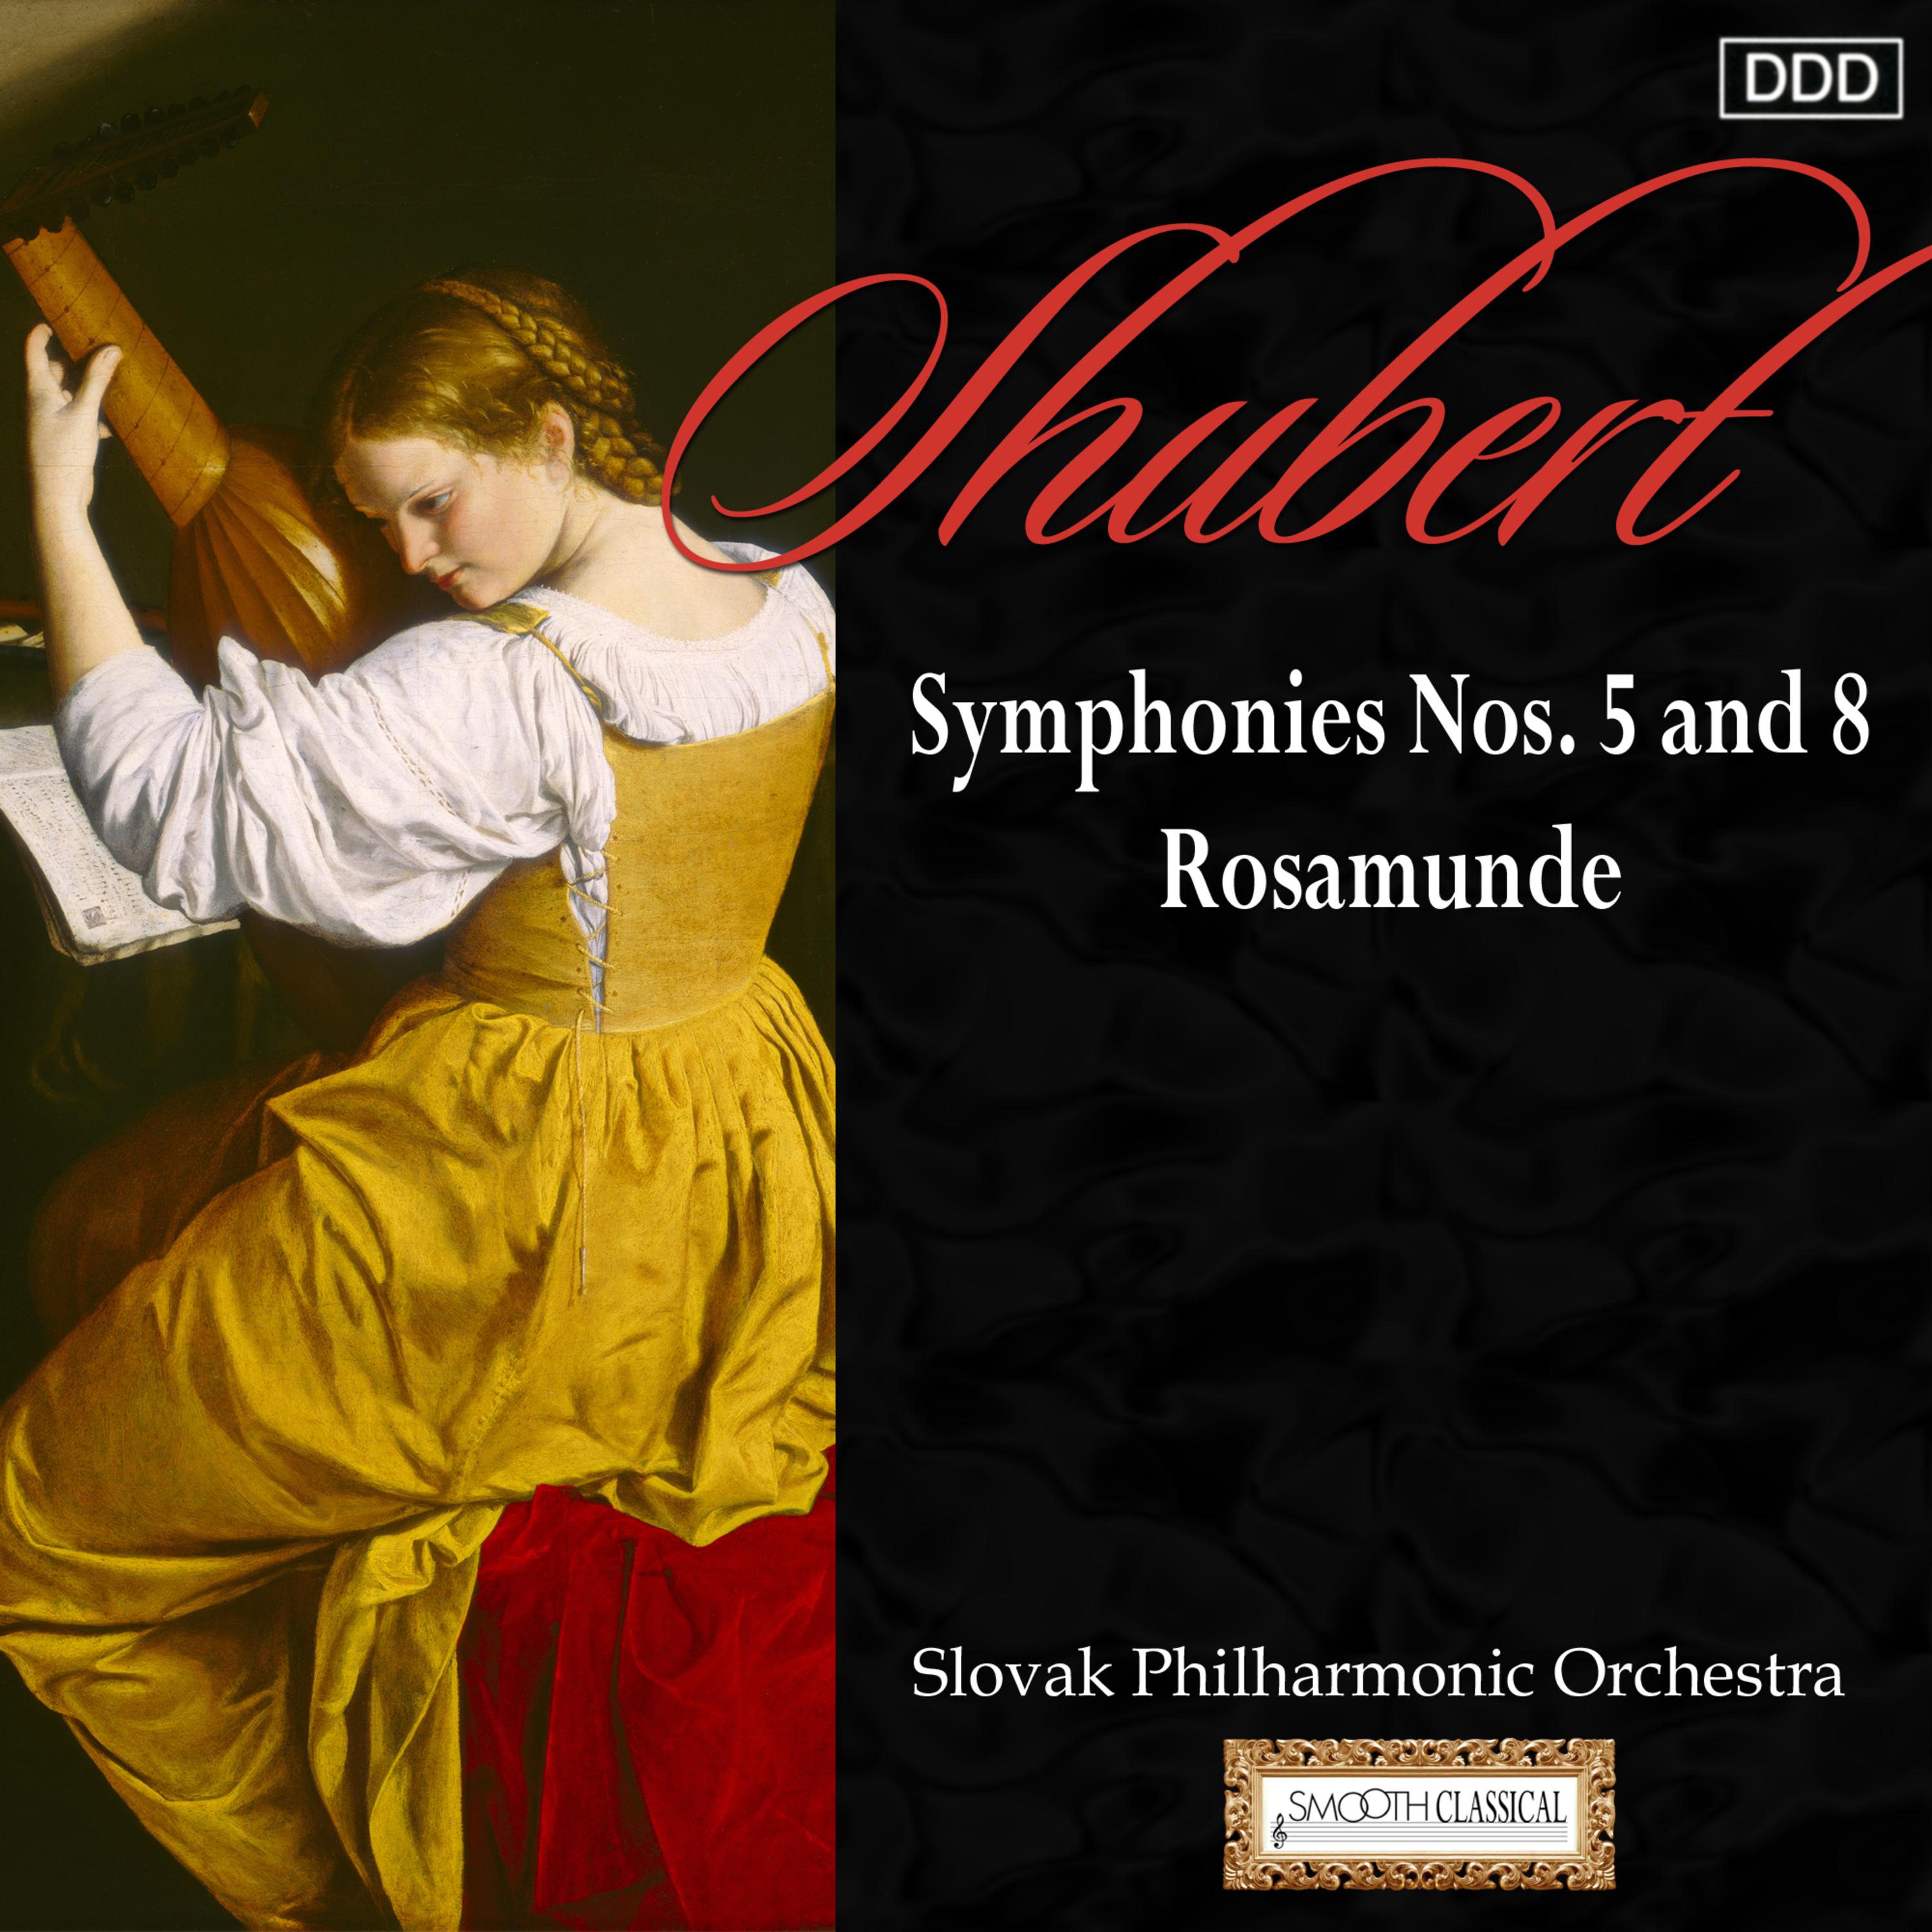 Schubert: Symphonies Nos. 5 and 8 - Rosamunde